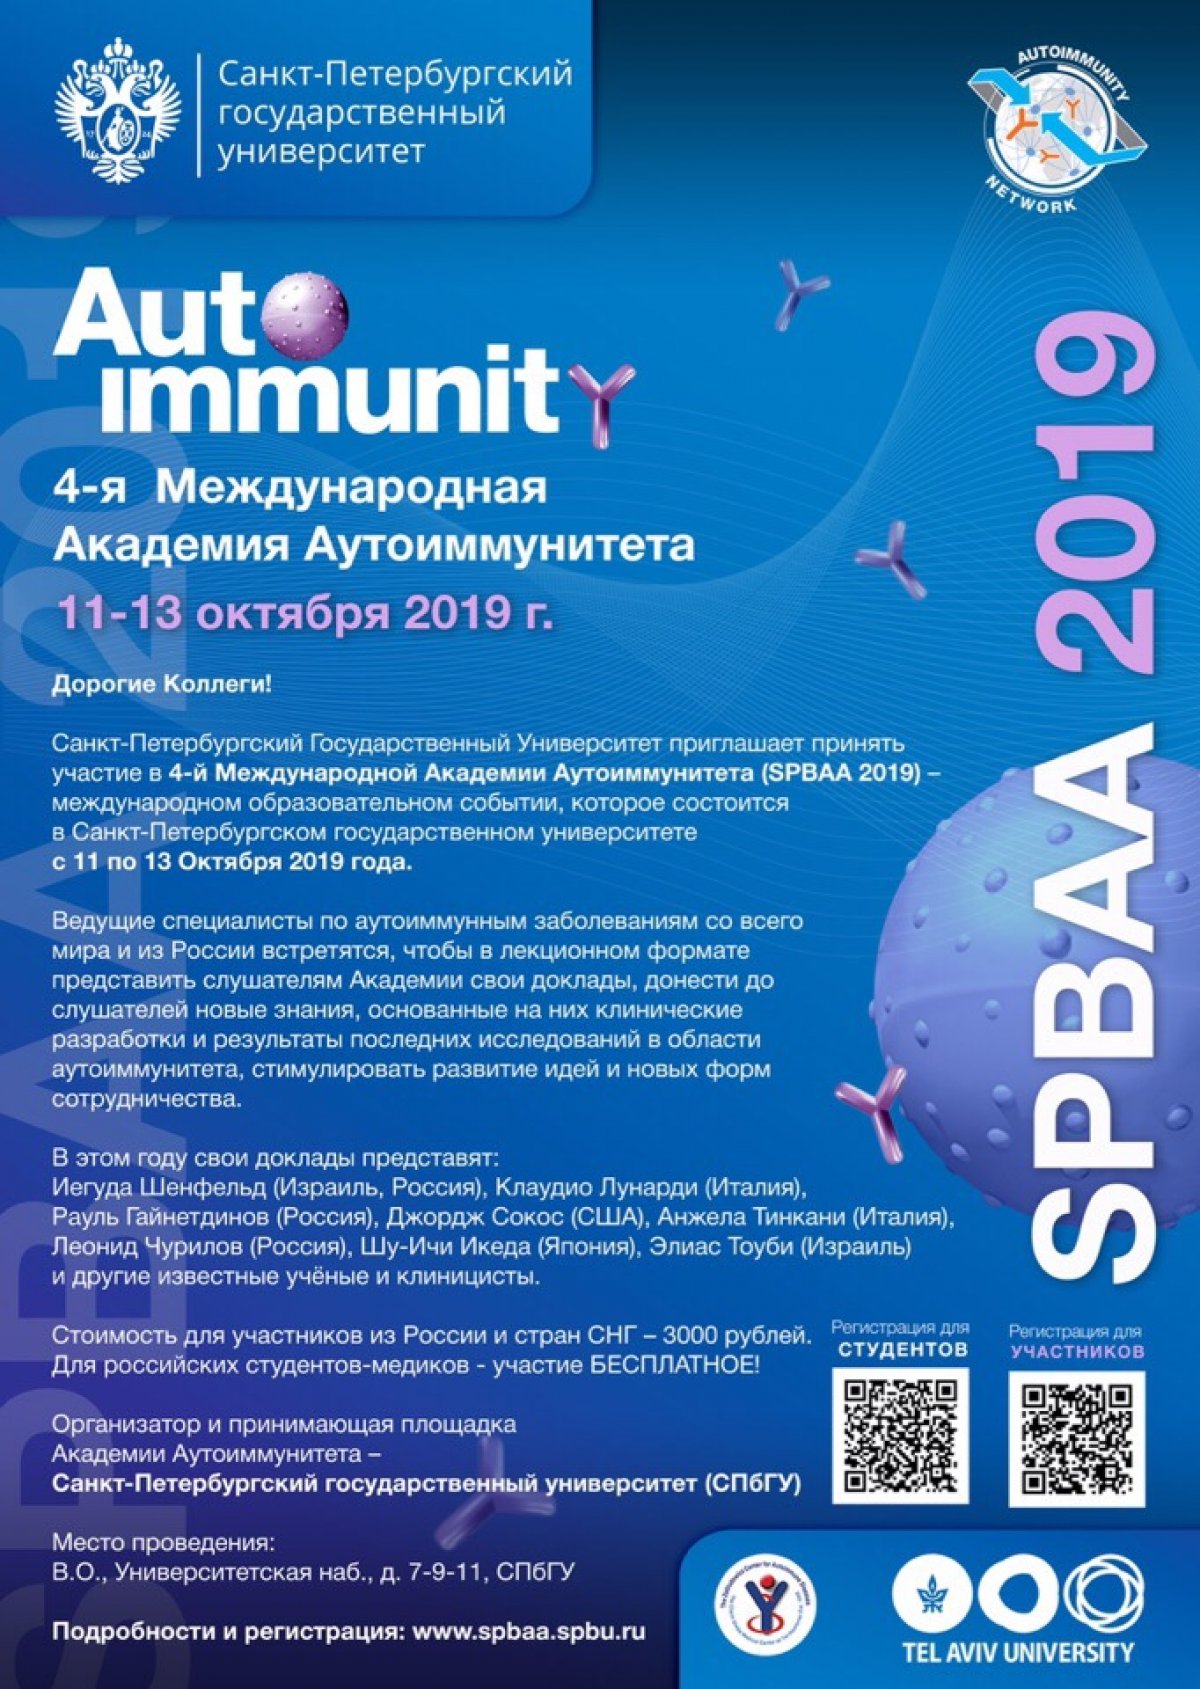 Санкт-Петербургский Государственный Университет приглашает принять участие в 4-й Международной Академии Аутоиммунитета (SPBAA 2019)!